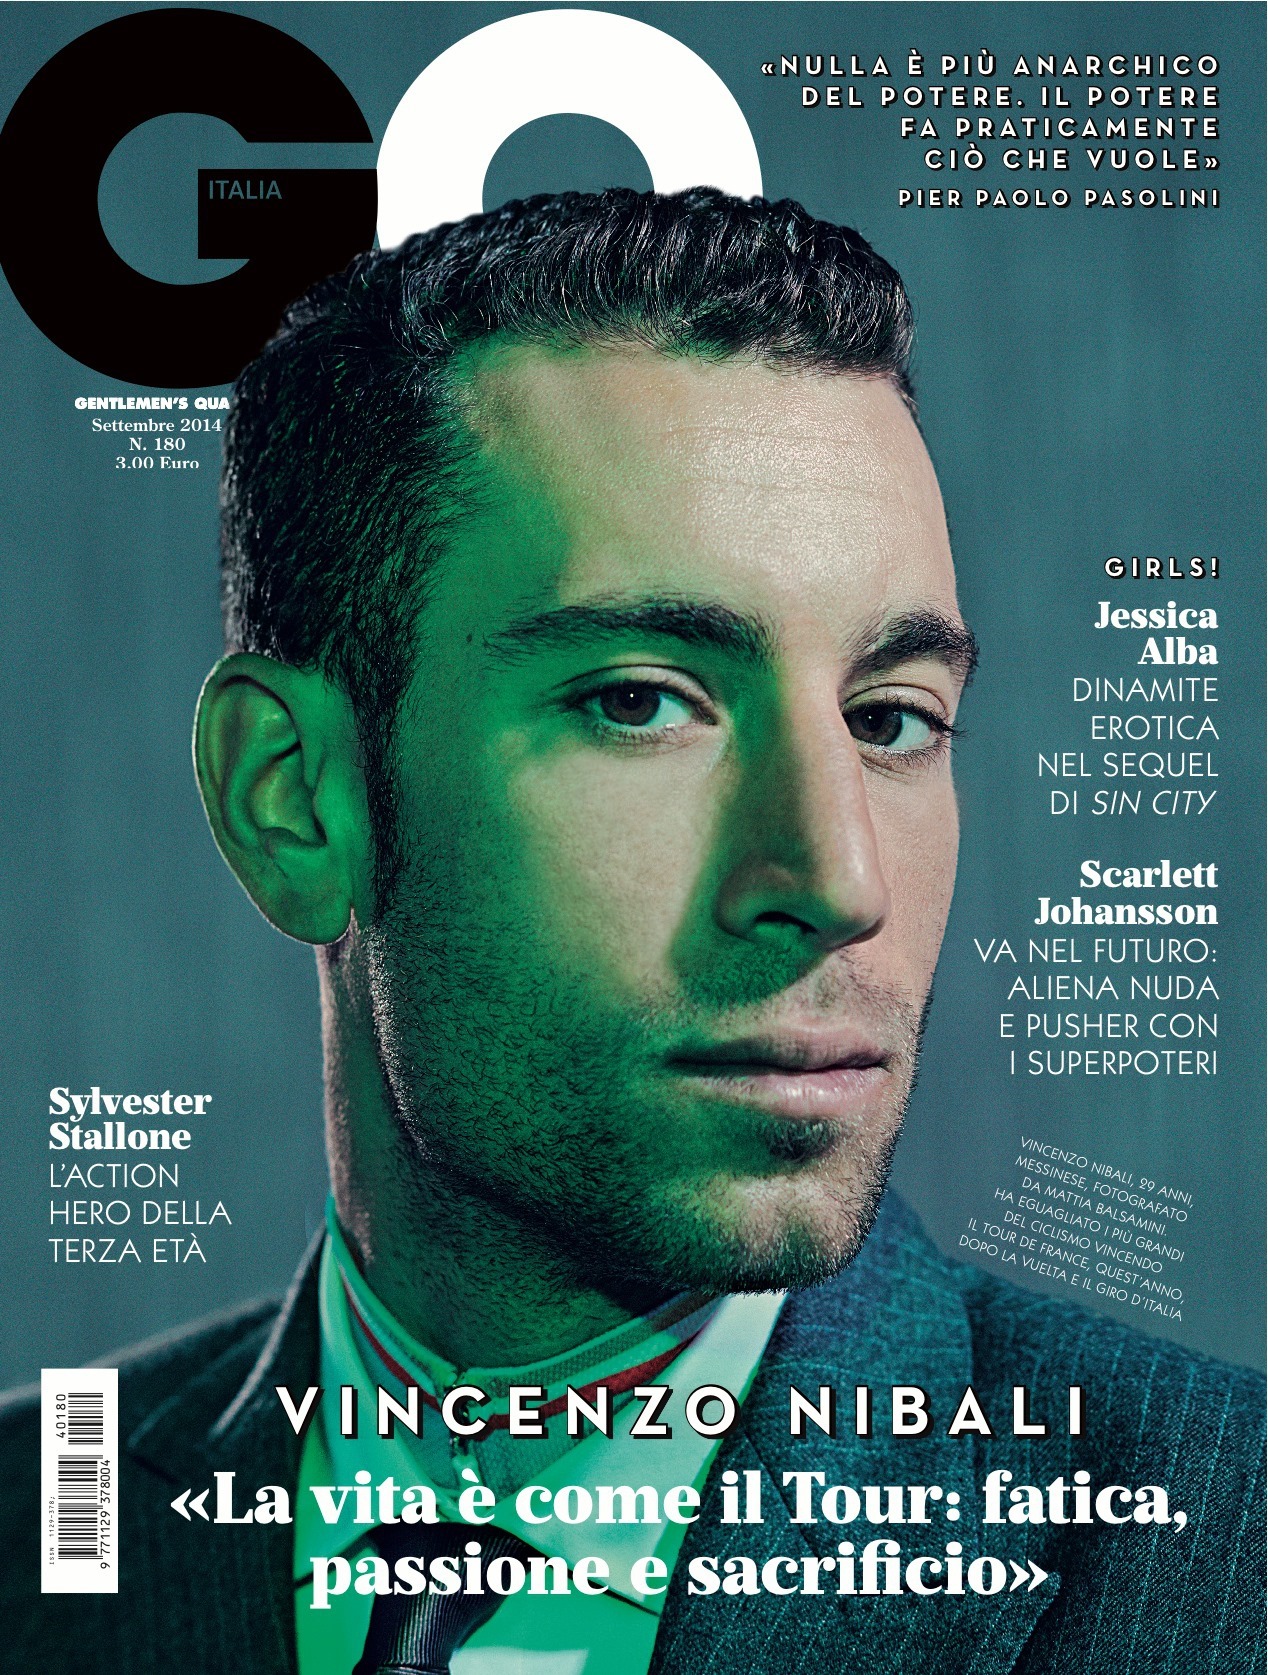 GQ Italia September 2014 “Vincenzo Nibali” | Mattia Balsamini | GQ Italia | Numerique Retouch Photo Retouching Studio